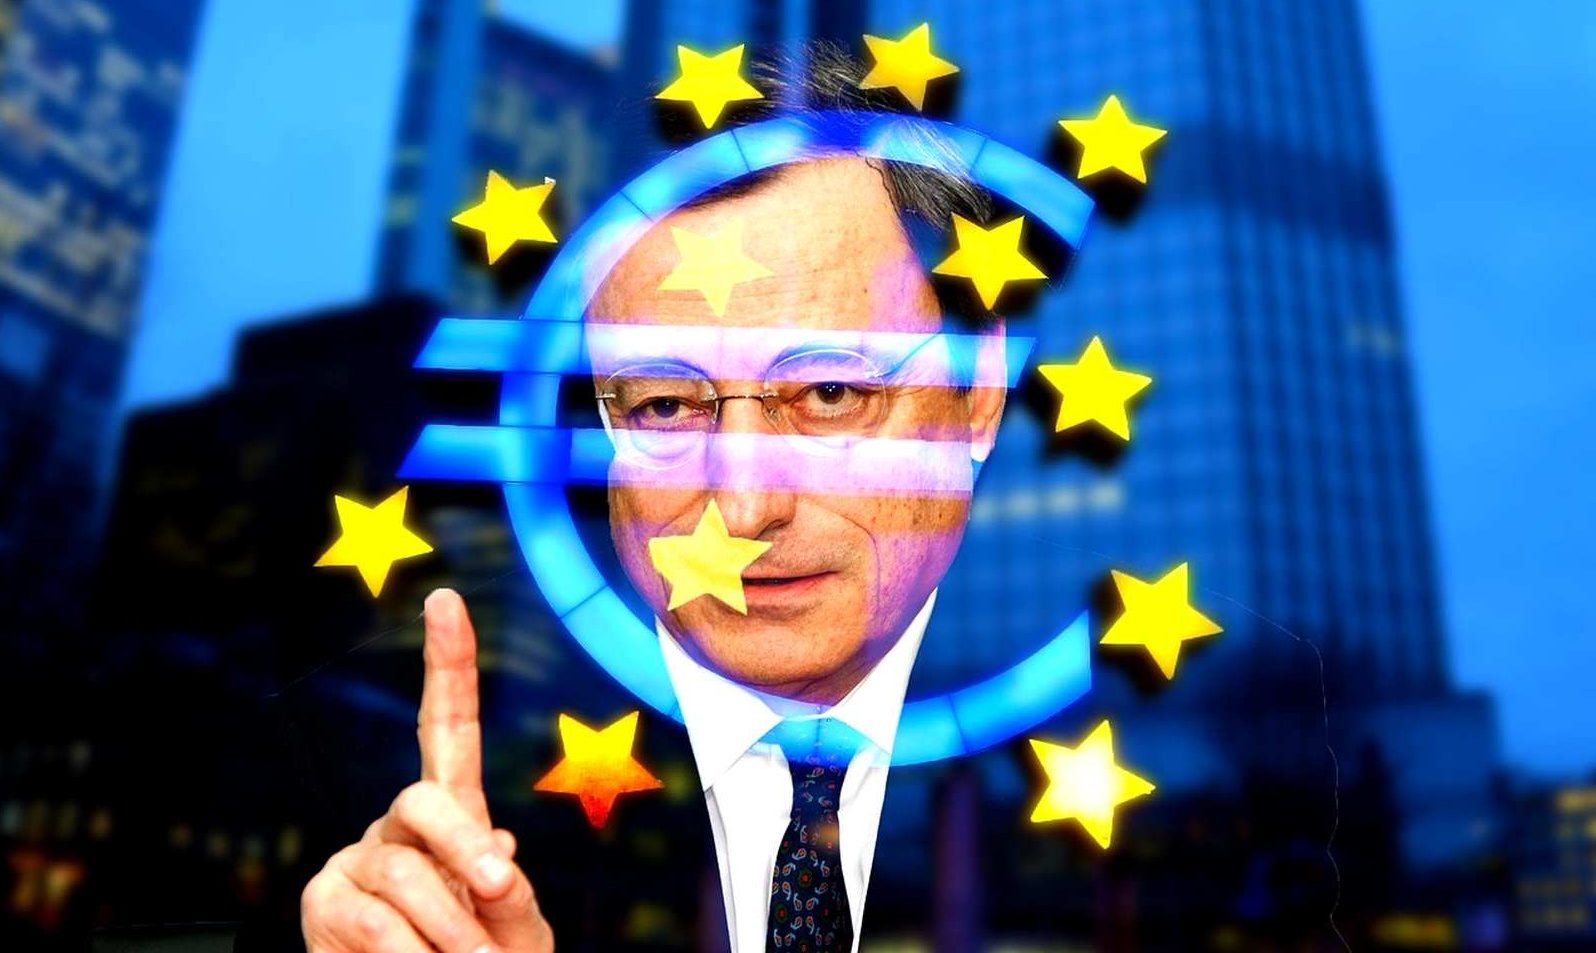 ECB nízké sazby